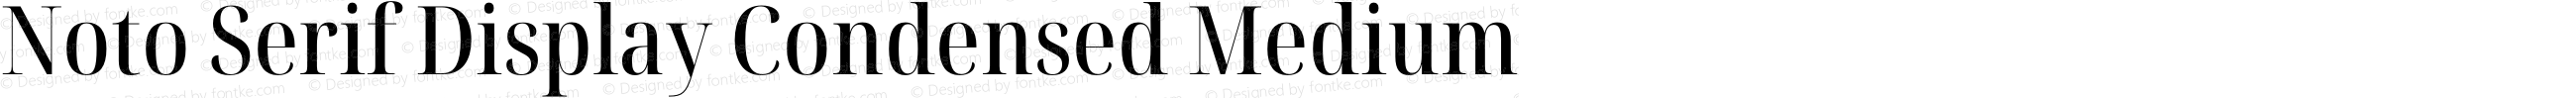 Noto Serif Display Condensed Medium